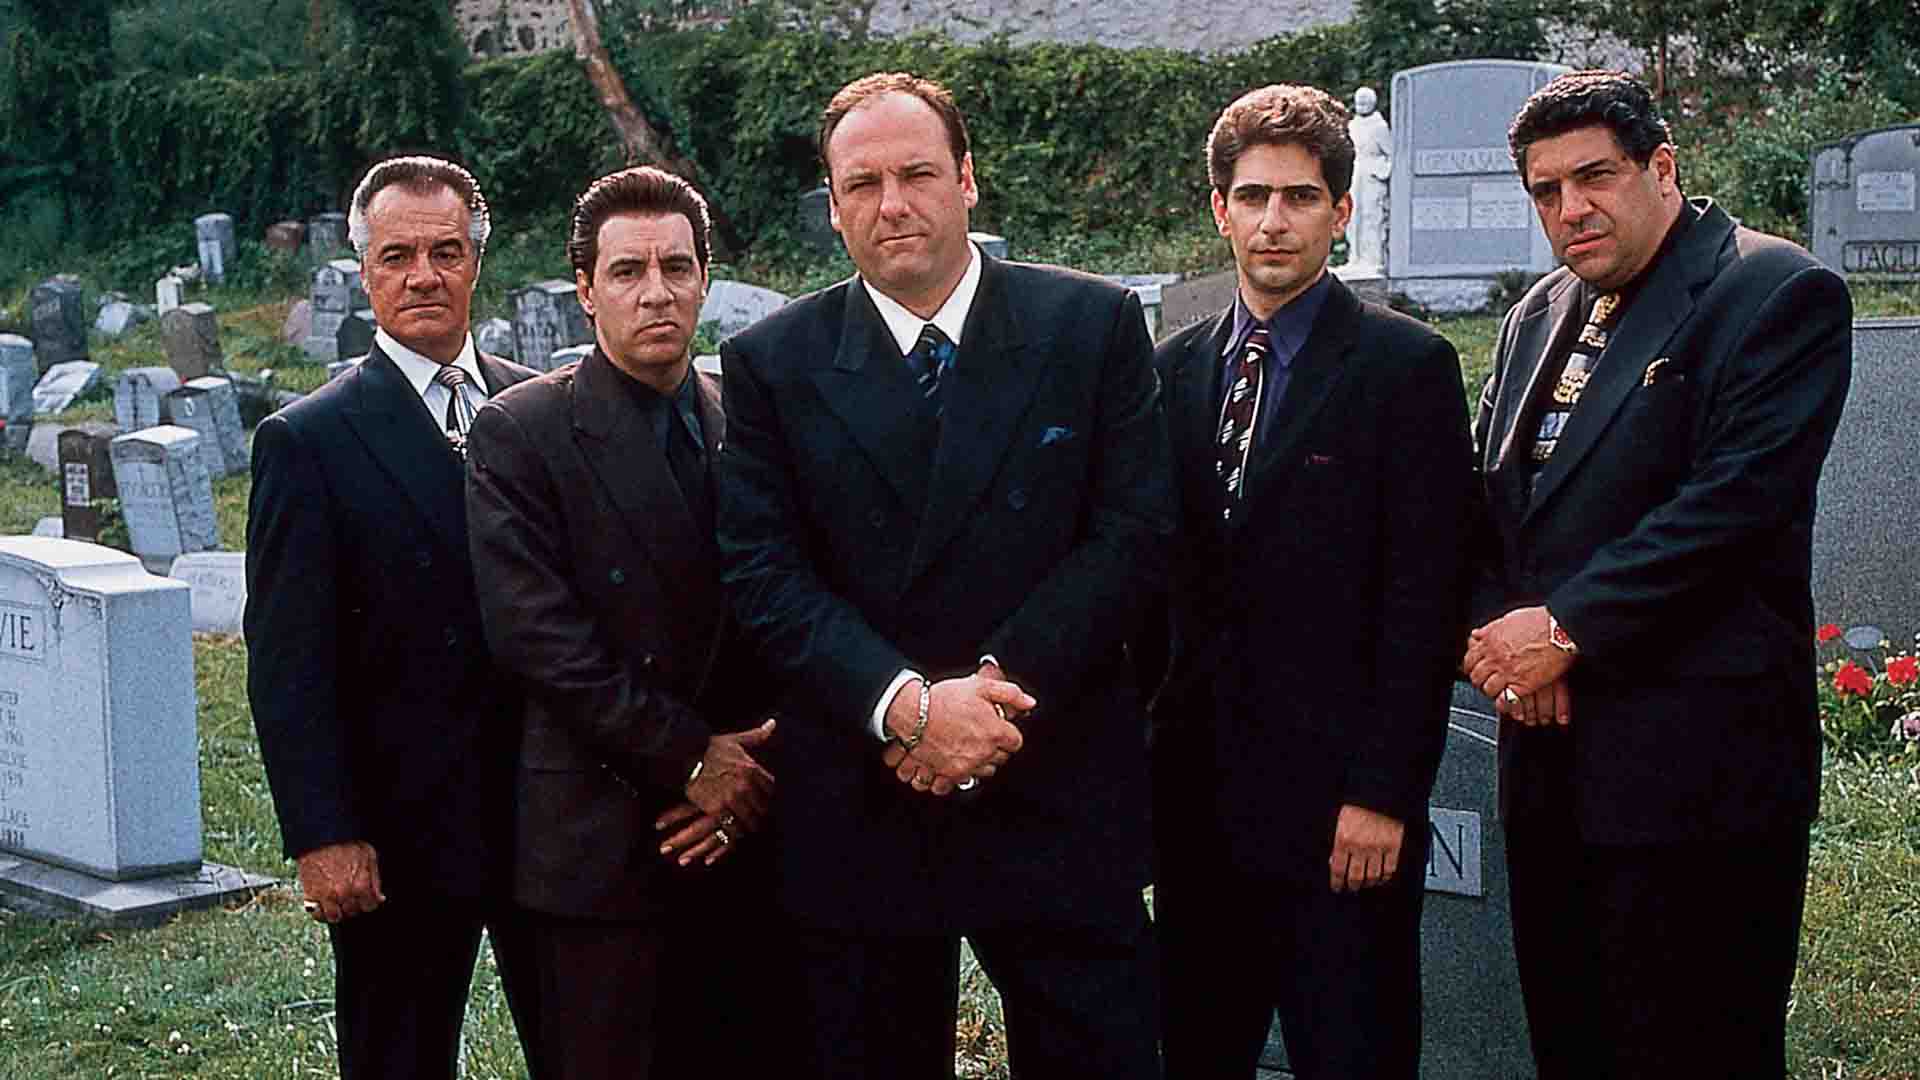 بازیگران اصلی سریال The Sopranos در یک قبرستان